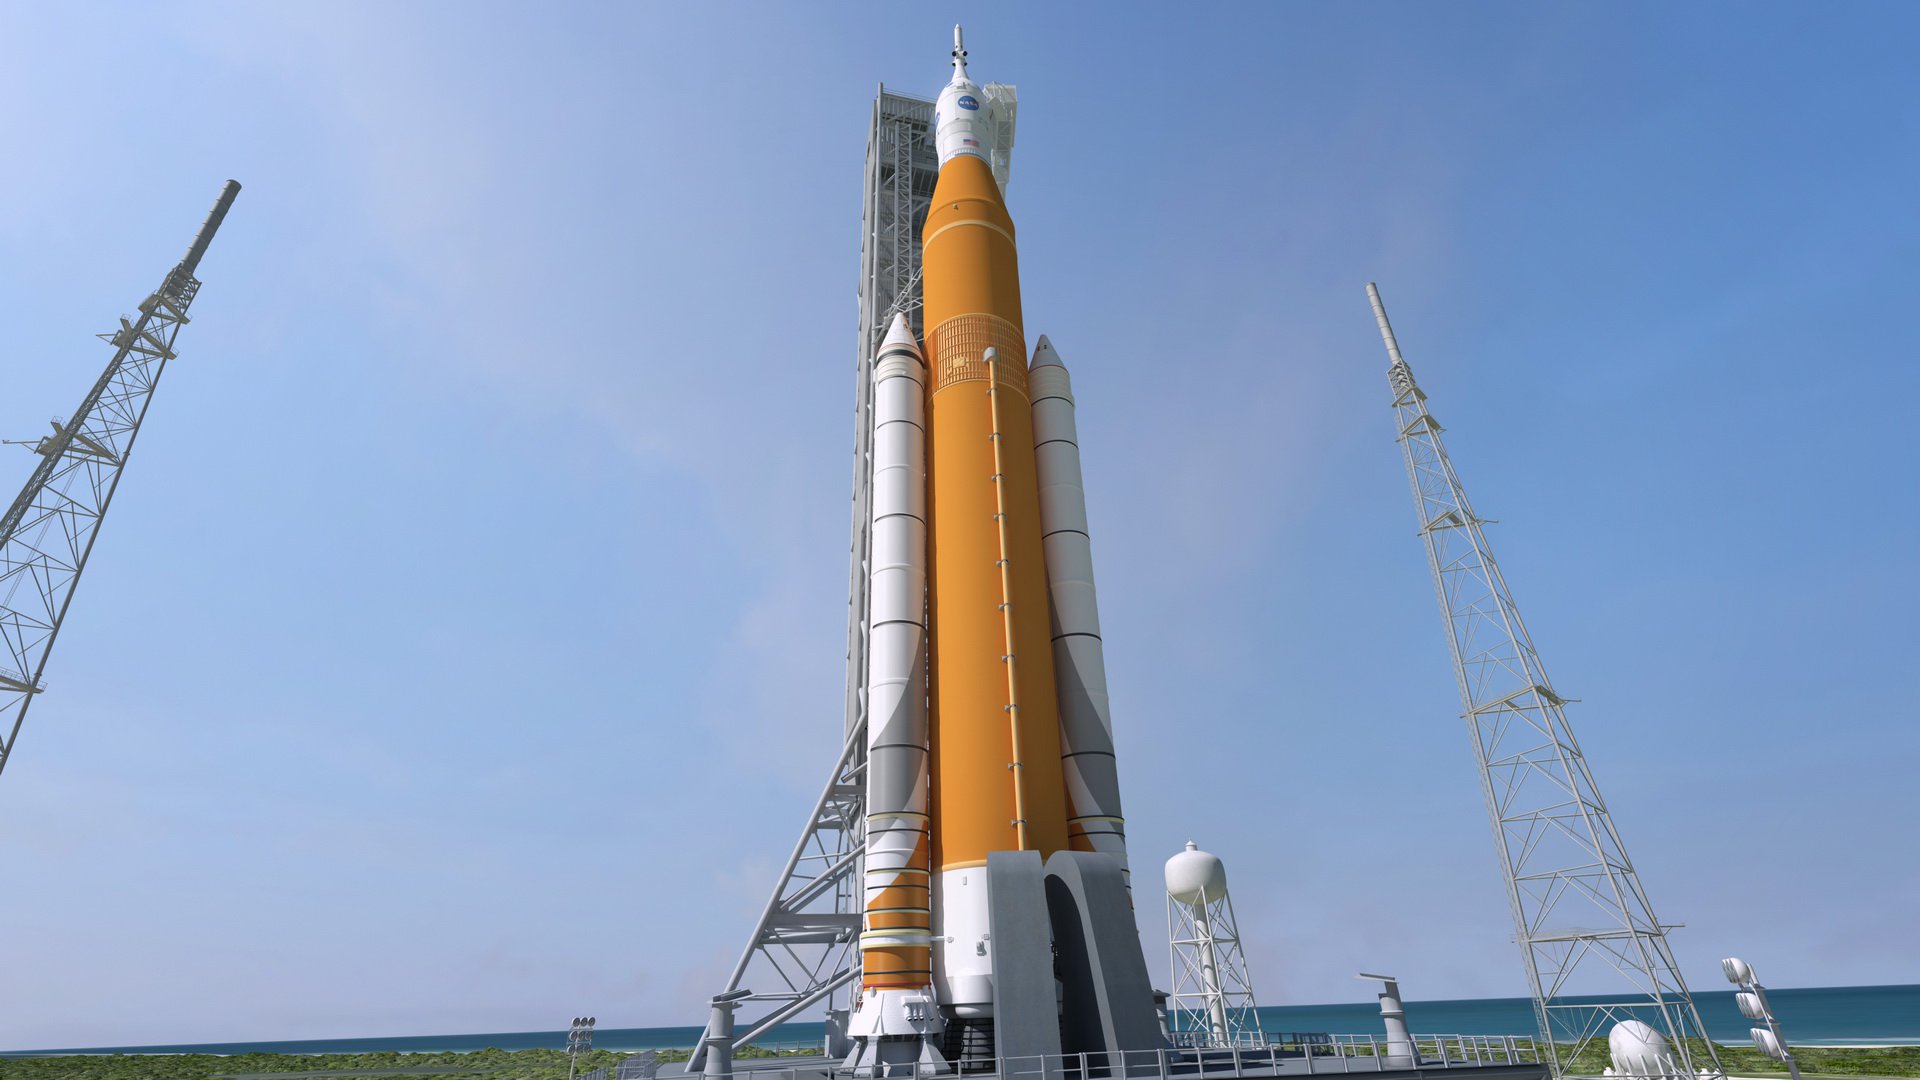 Inspektionen visade att transportören raket SLS NASA är ett mycket stort problem